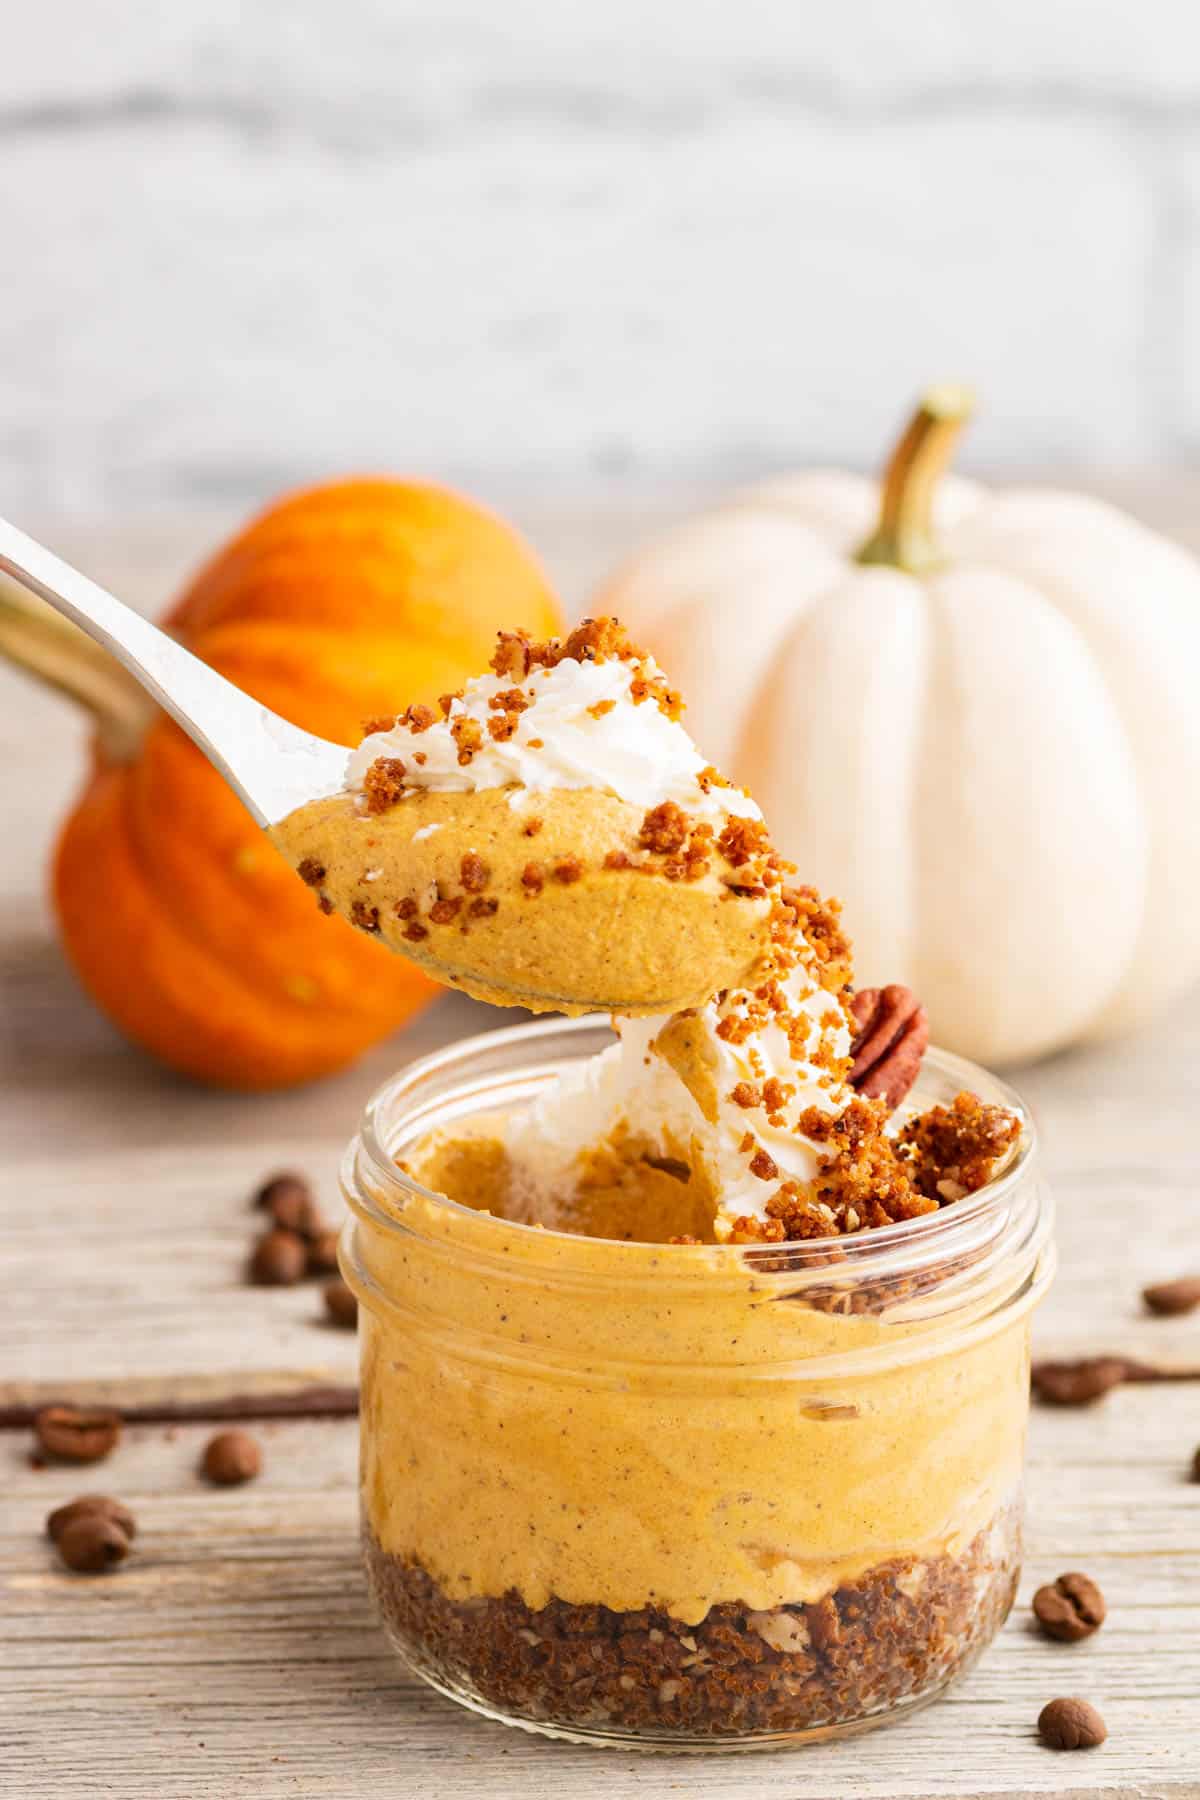 A spoon holds a biteful of creamy Pumpkin Delight dessert.